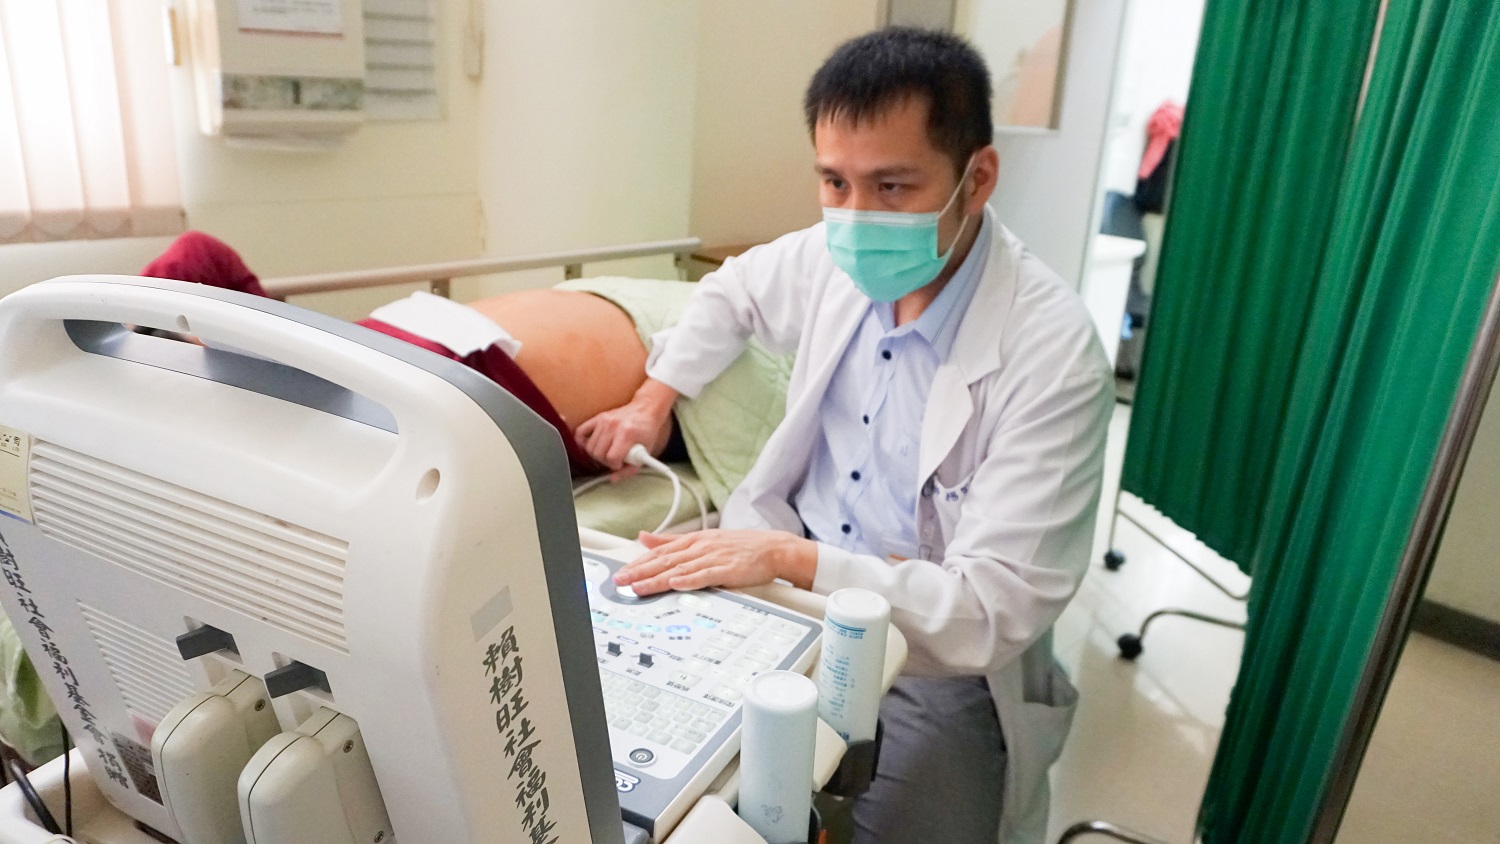 彰化醫院肝膽腸胃科主任楊智超為病人進行超音波檢測。(記者張光雄翻攝)